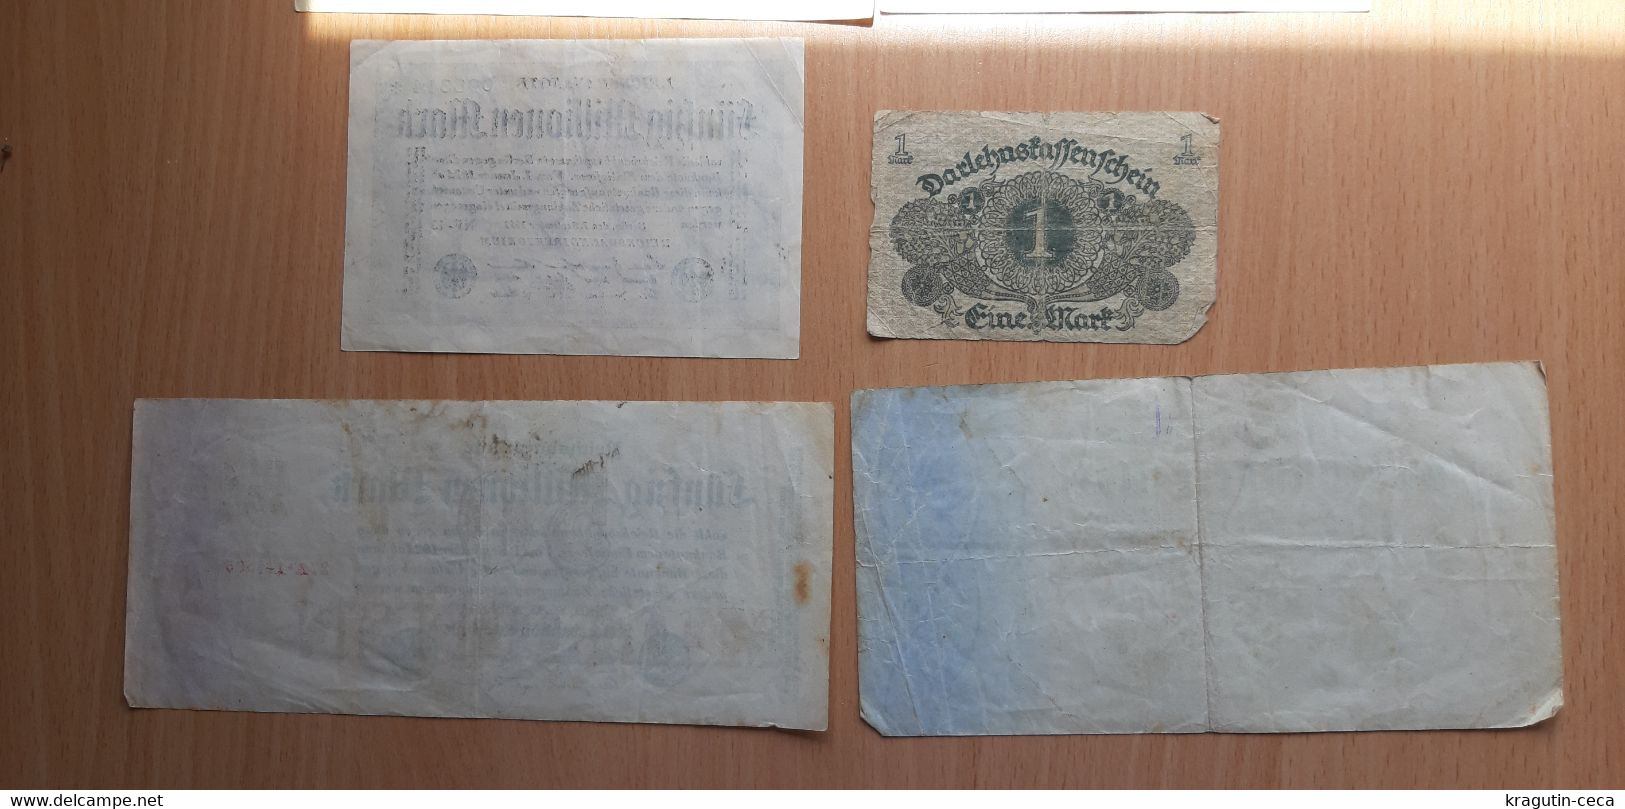 REICHSBANKNOTE 1923 LOT GERMAN GERMANY BANKNOTE BANK MILLION MARK BILL paper money BILLET DE BANQUE Darlehnskassenschein